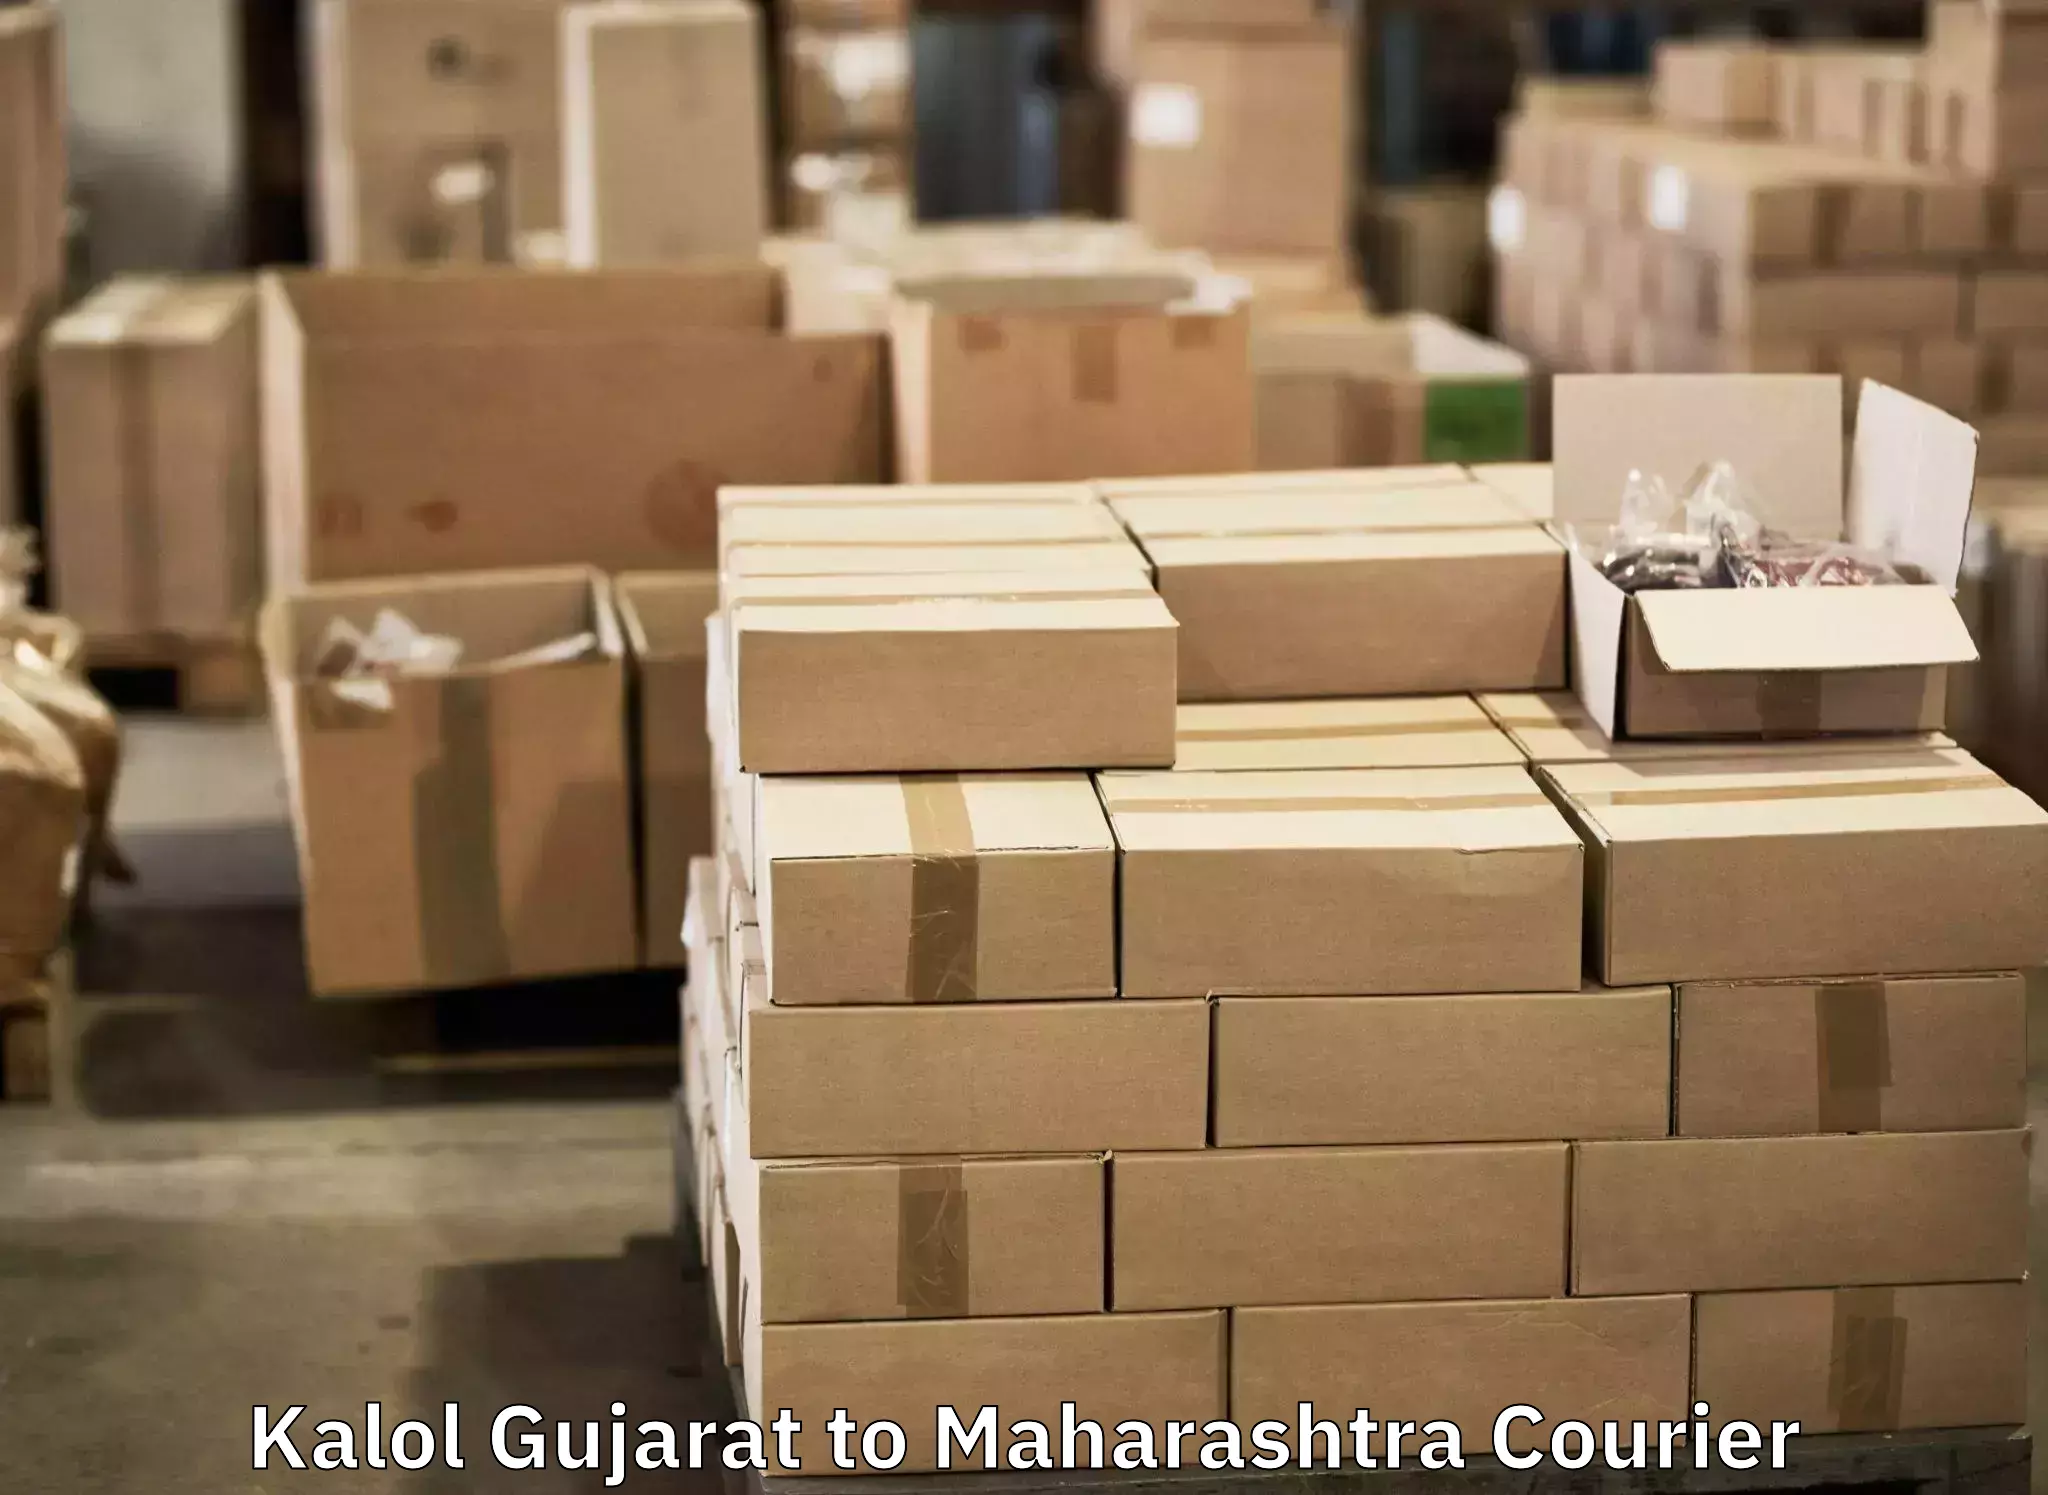 Online luggage shipping booking Kalol Gujarat to Sindhudurg